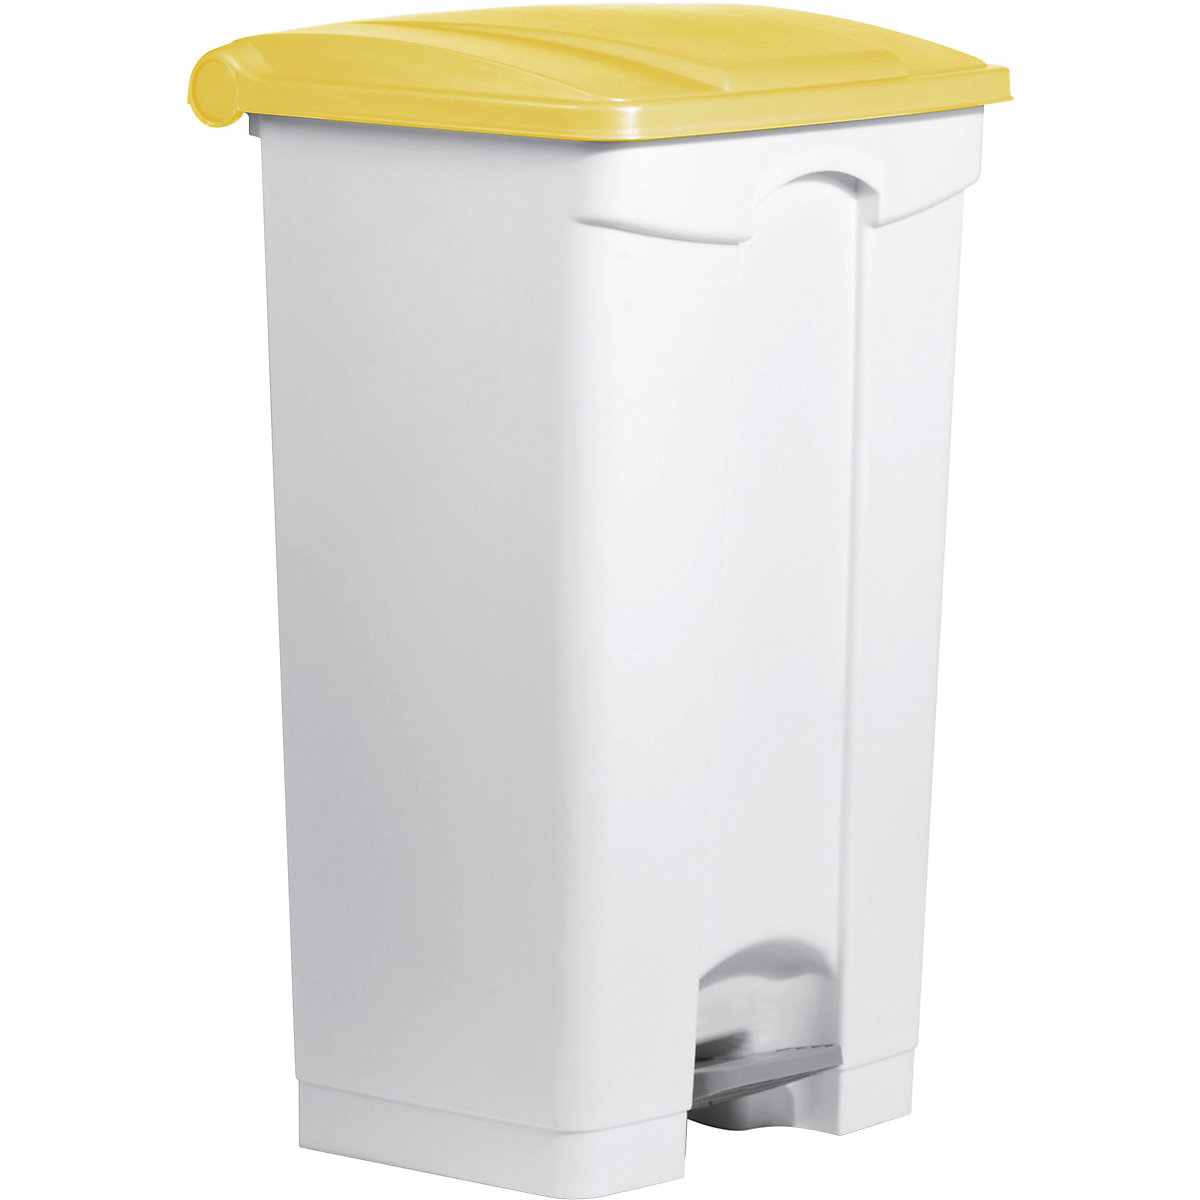 Spremnik za otpad s papučicom – helit, volumen 90 l, ŠxVxD 500 x 830 x 410 mm, u bijeloj boji, poklopac u žutoj boji-4